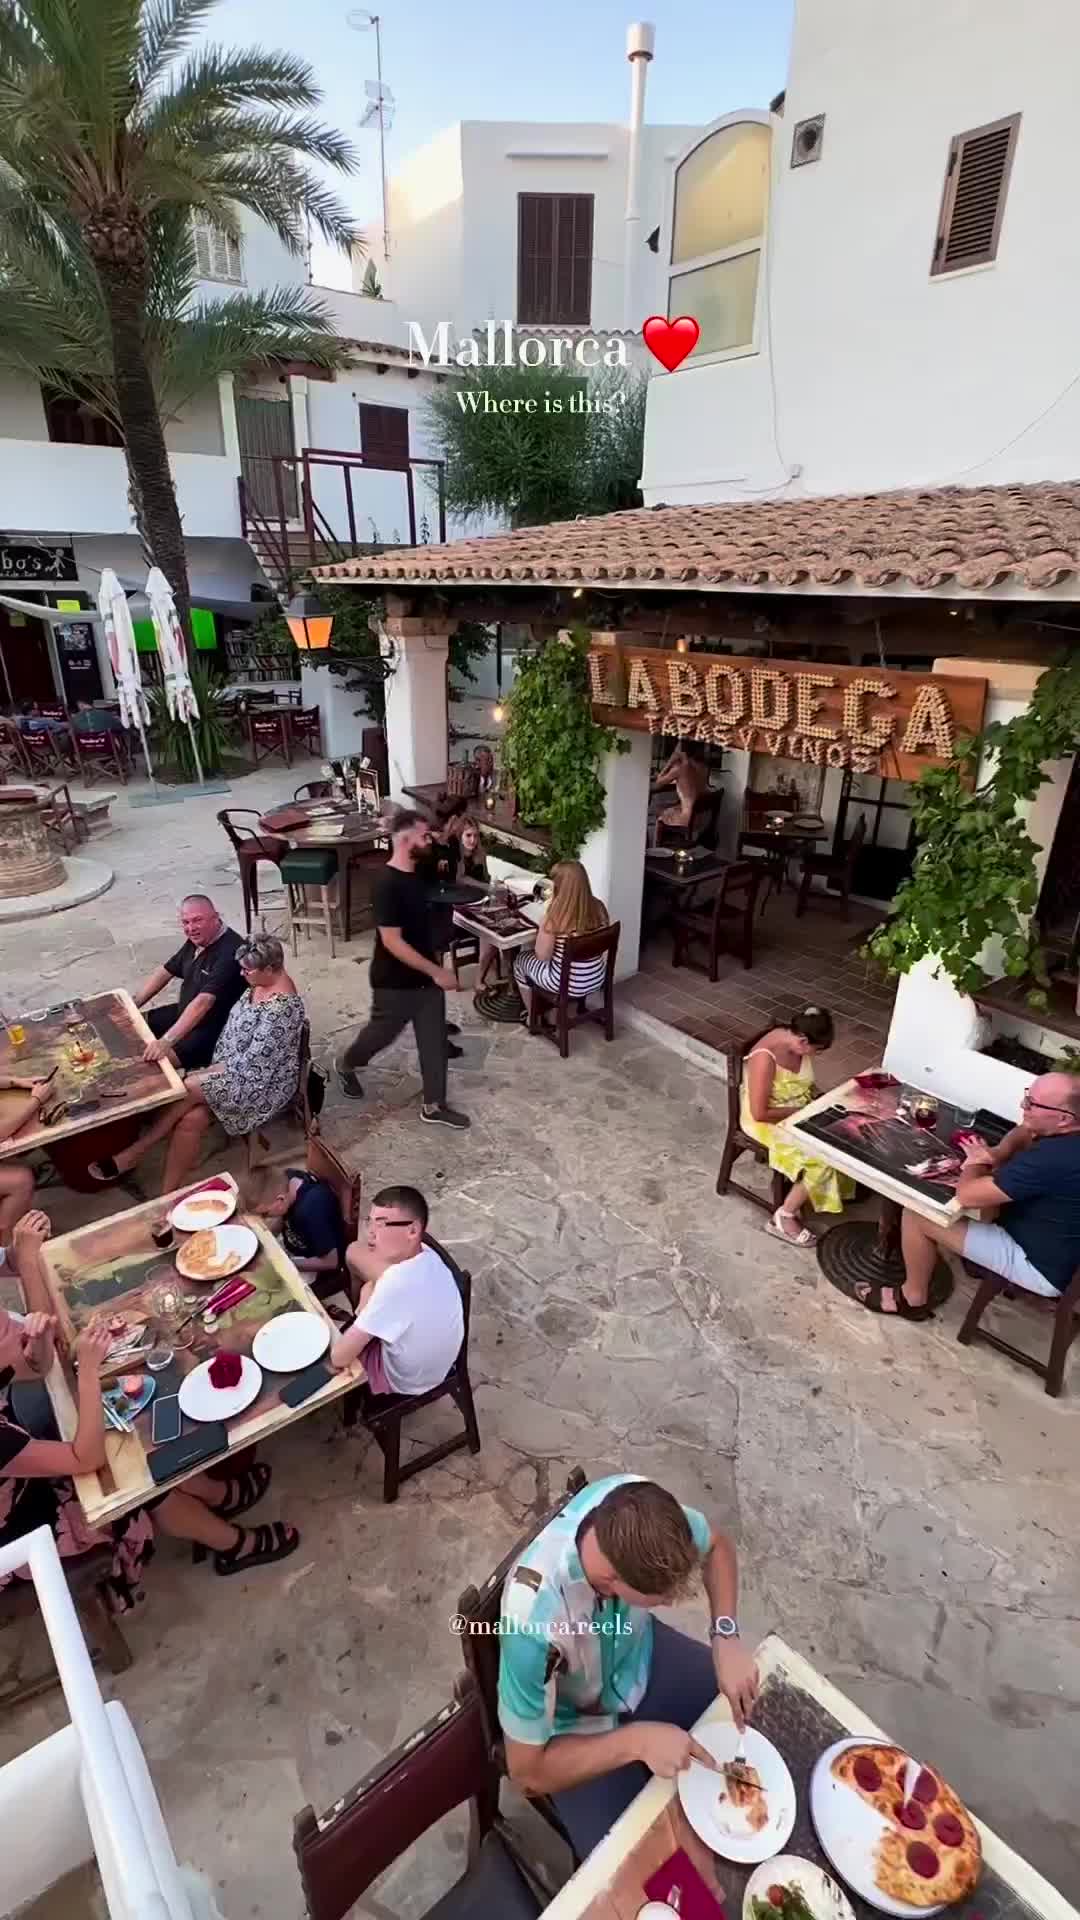 Discover La Bodega Cala d’Or in Mallorca, Spain